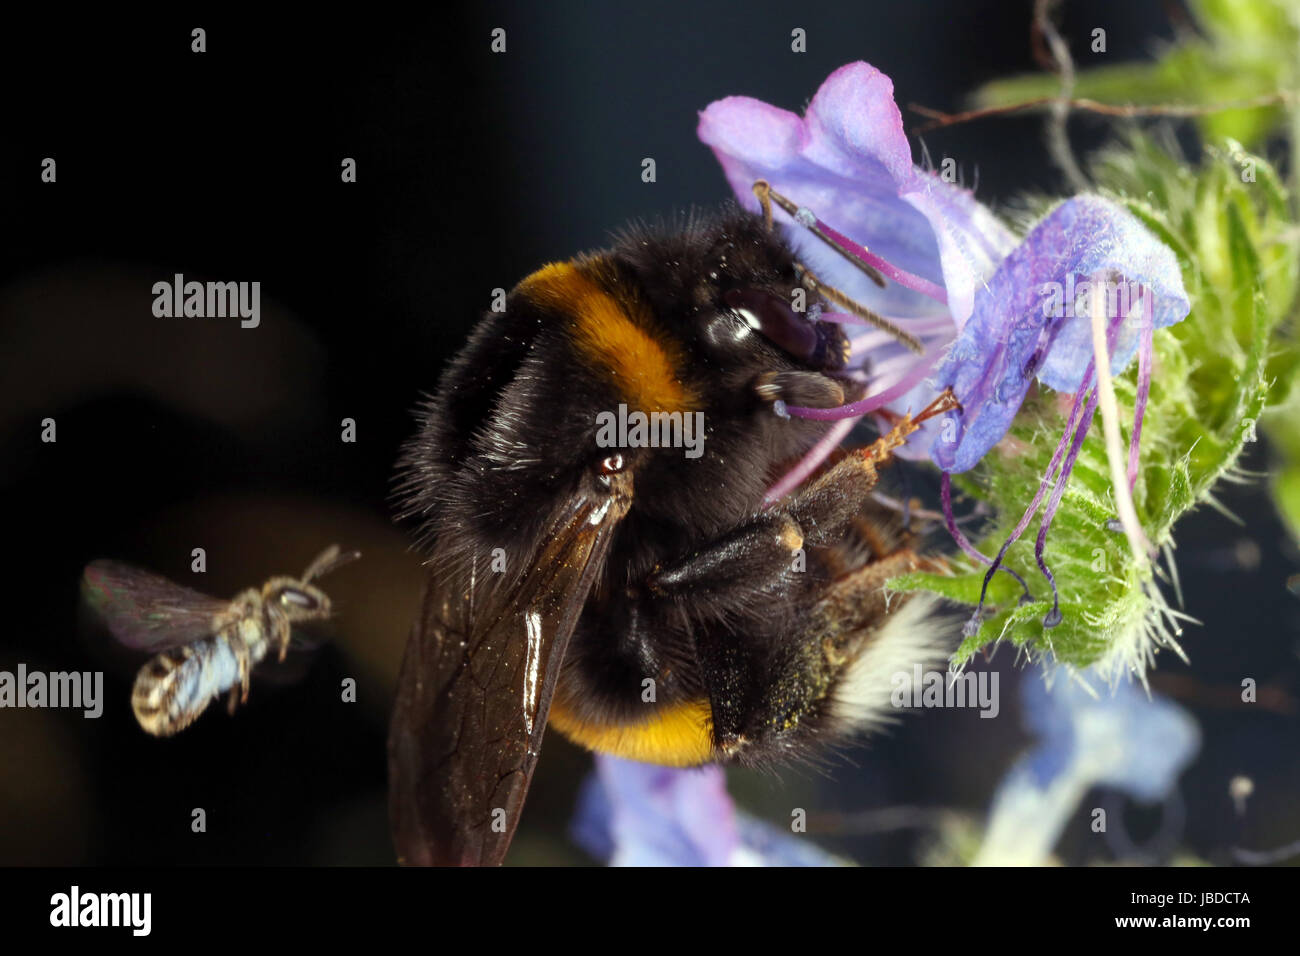 Berlín, Alemania, Tierra Bumblebee recoge el néctar de una flor violeta Foto de stock